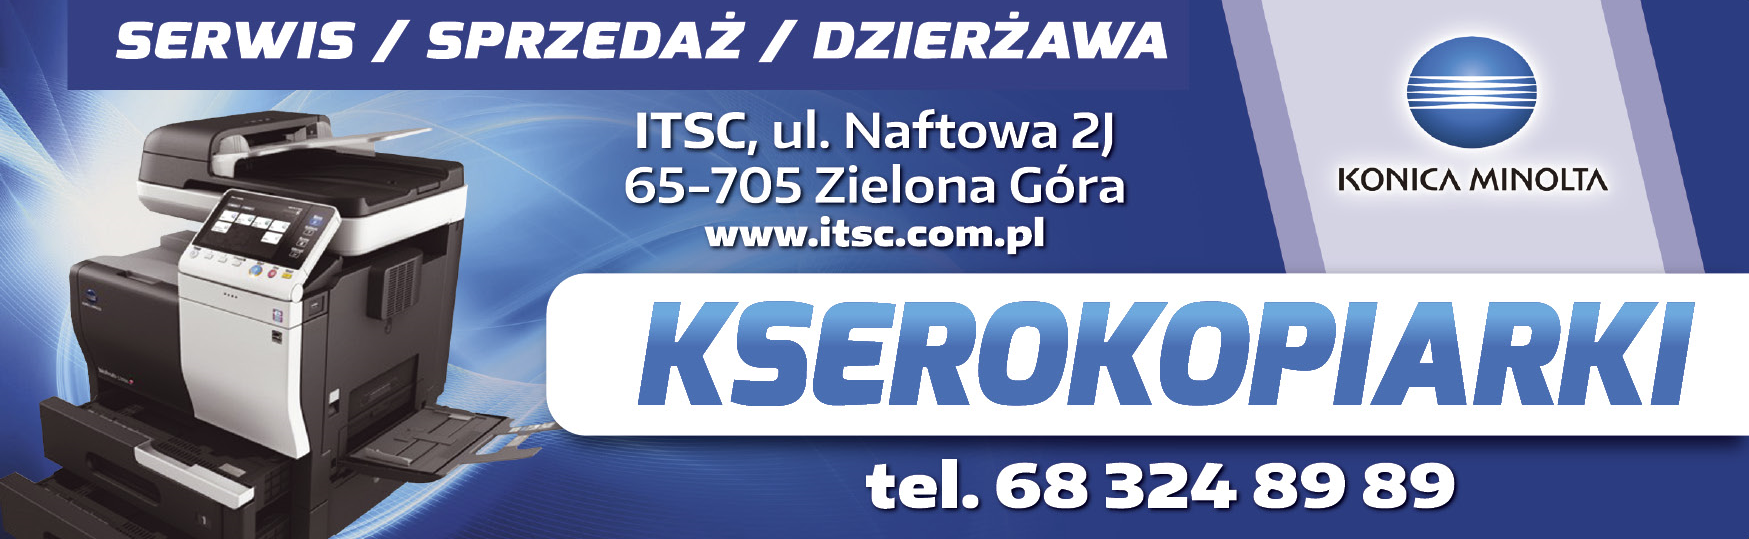 ITSC s.c. Zielona Góra Kserokopiarki - Serwis / Sprzedaż / Dzierżawa